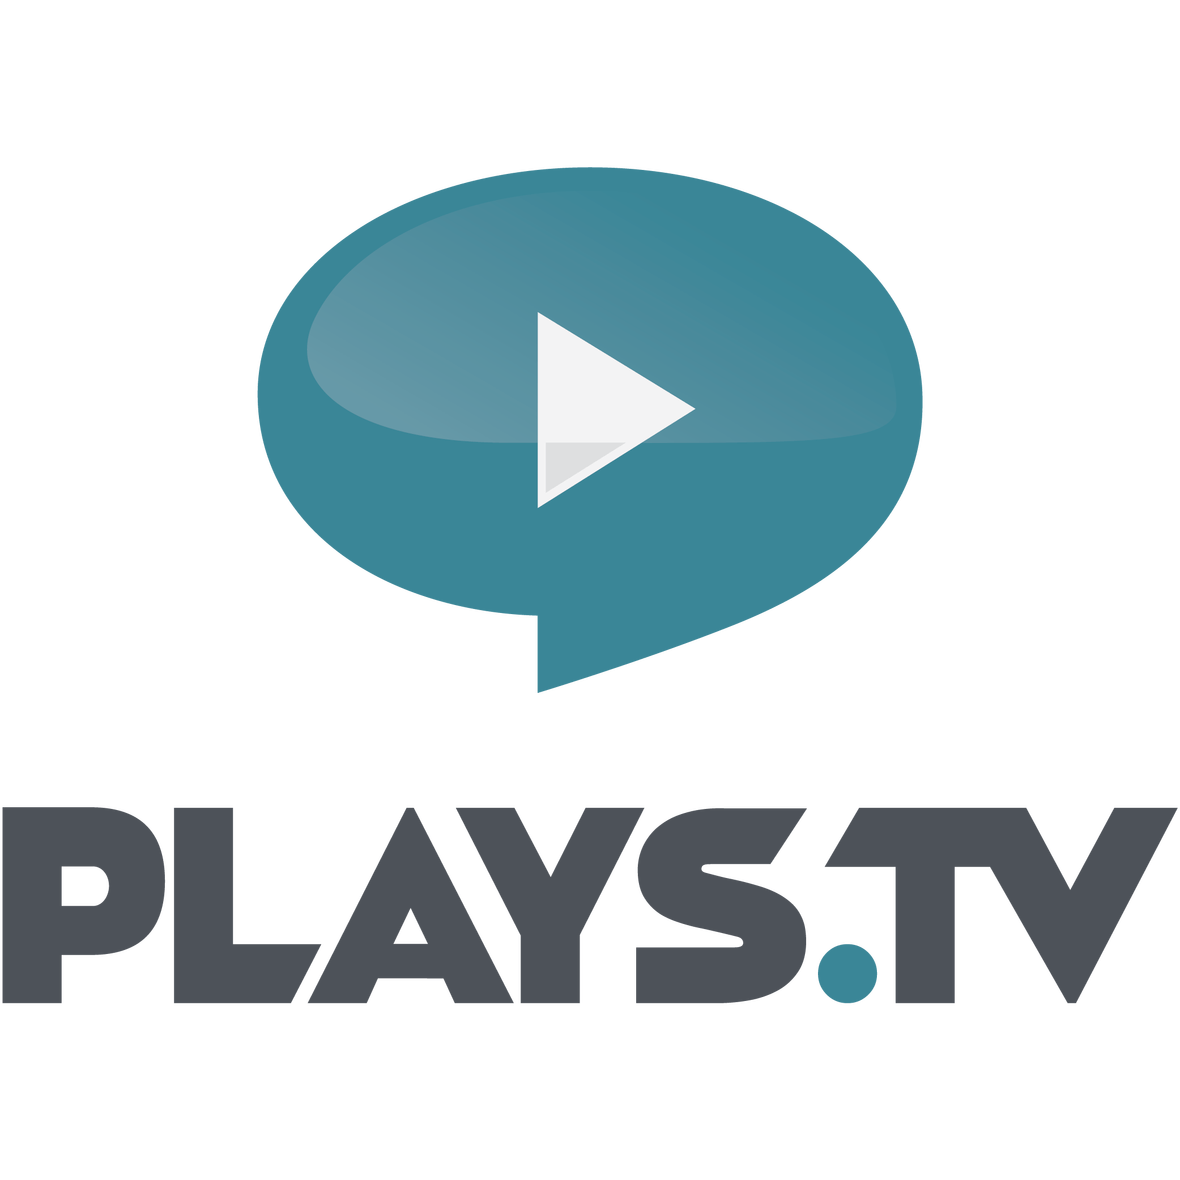 Chrome TV Logo - Plays Tv Logo